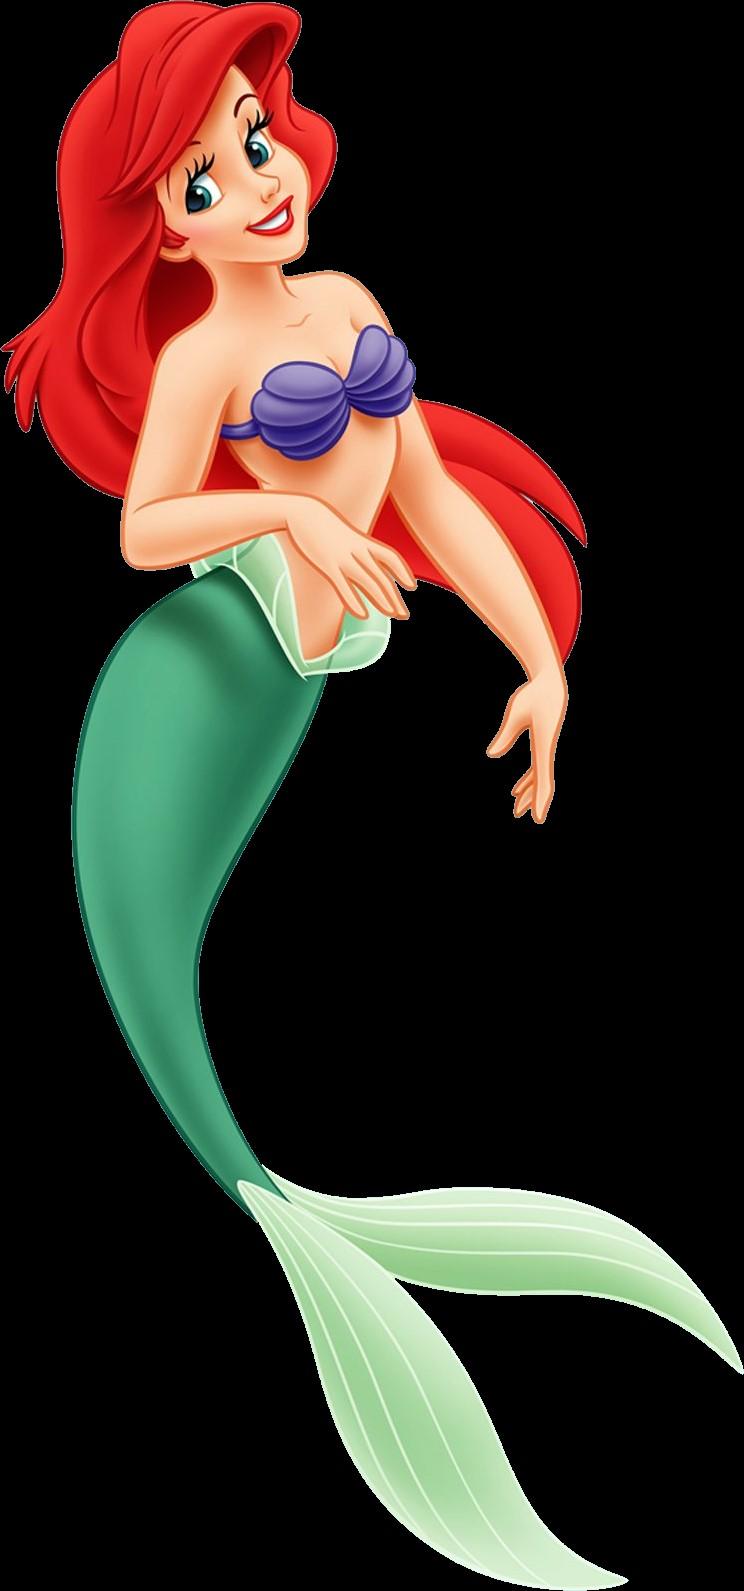 Ariel (Mermaid) Face: Fair skin, medium contouring, blush Eye Shadow: Blue and Green